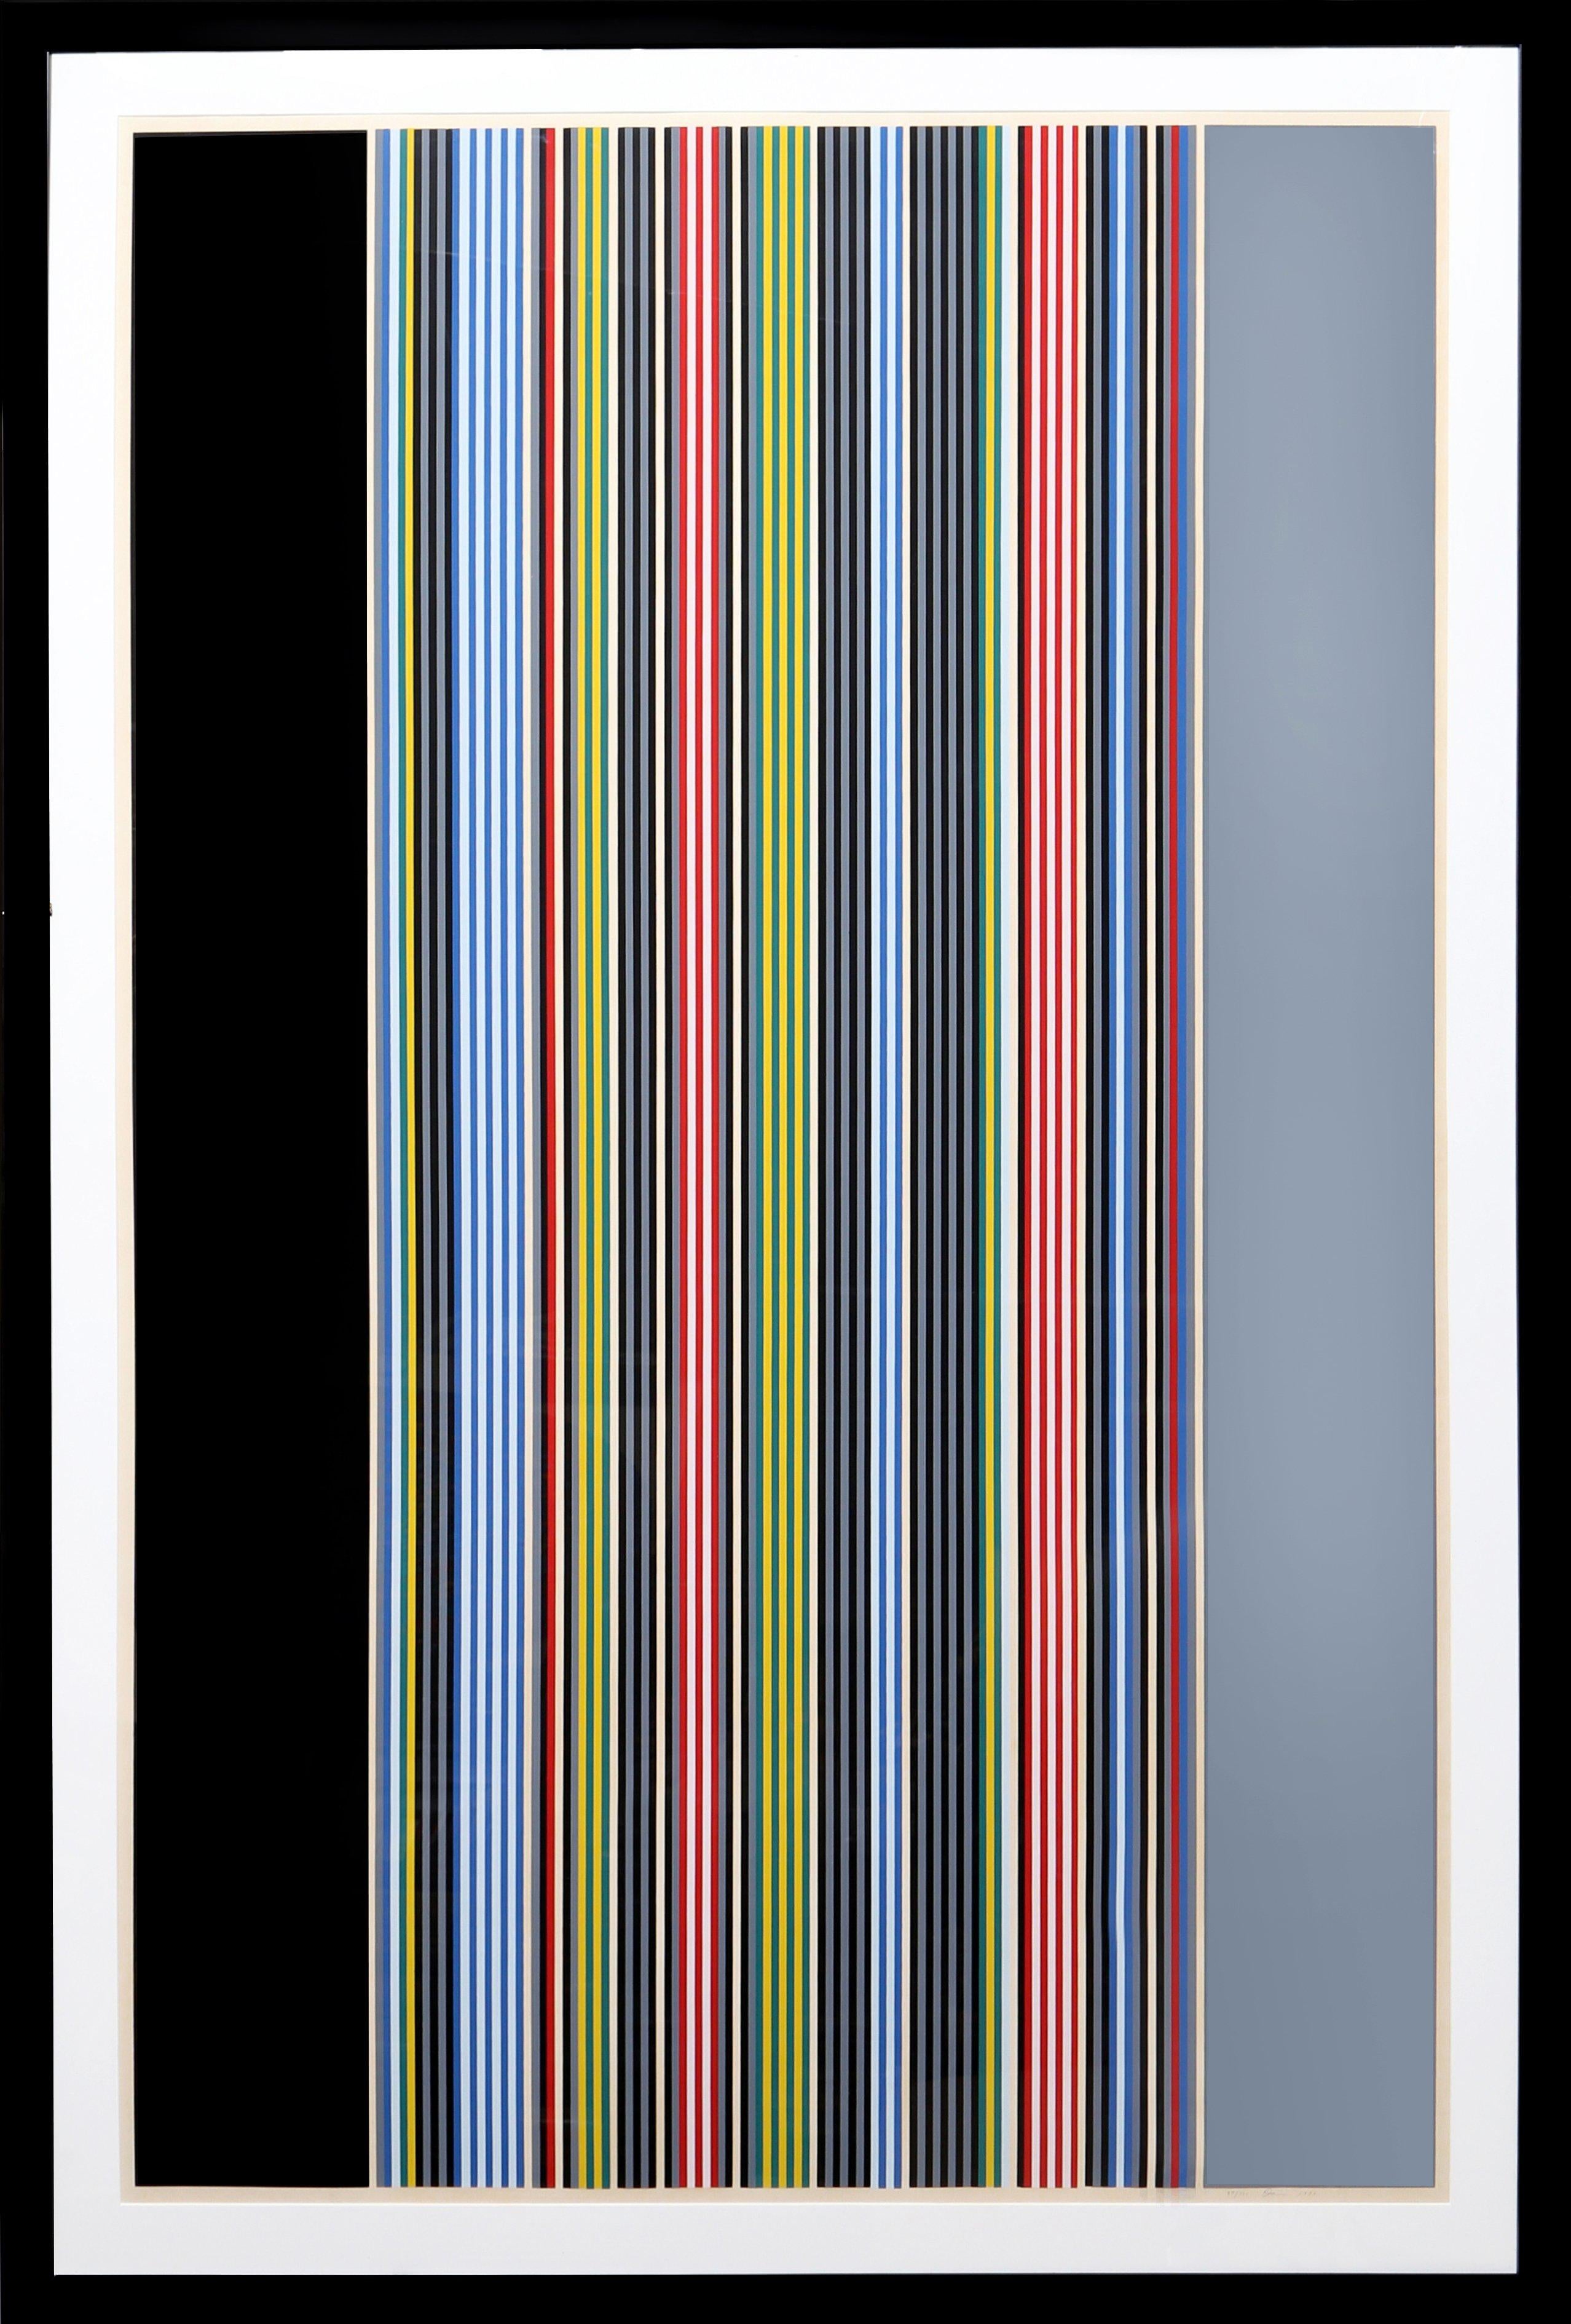 Une grande gravure minimaliste à rayures intitulée "Black Watch III" de l'artiste américain de Color Field, Gene Davis. Le tirage est signé et numéroté au crayon et joliment encadré. 

Date : 1974
Sérigraphie, signée et numérotée au crayon.
Edition